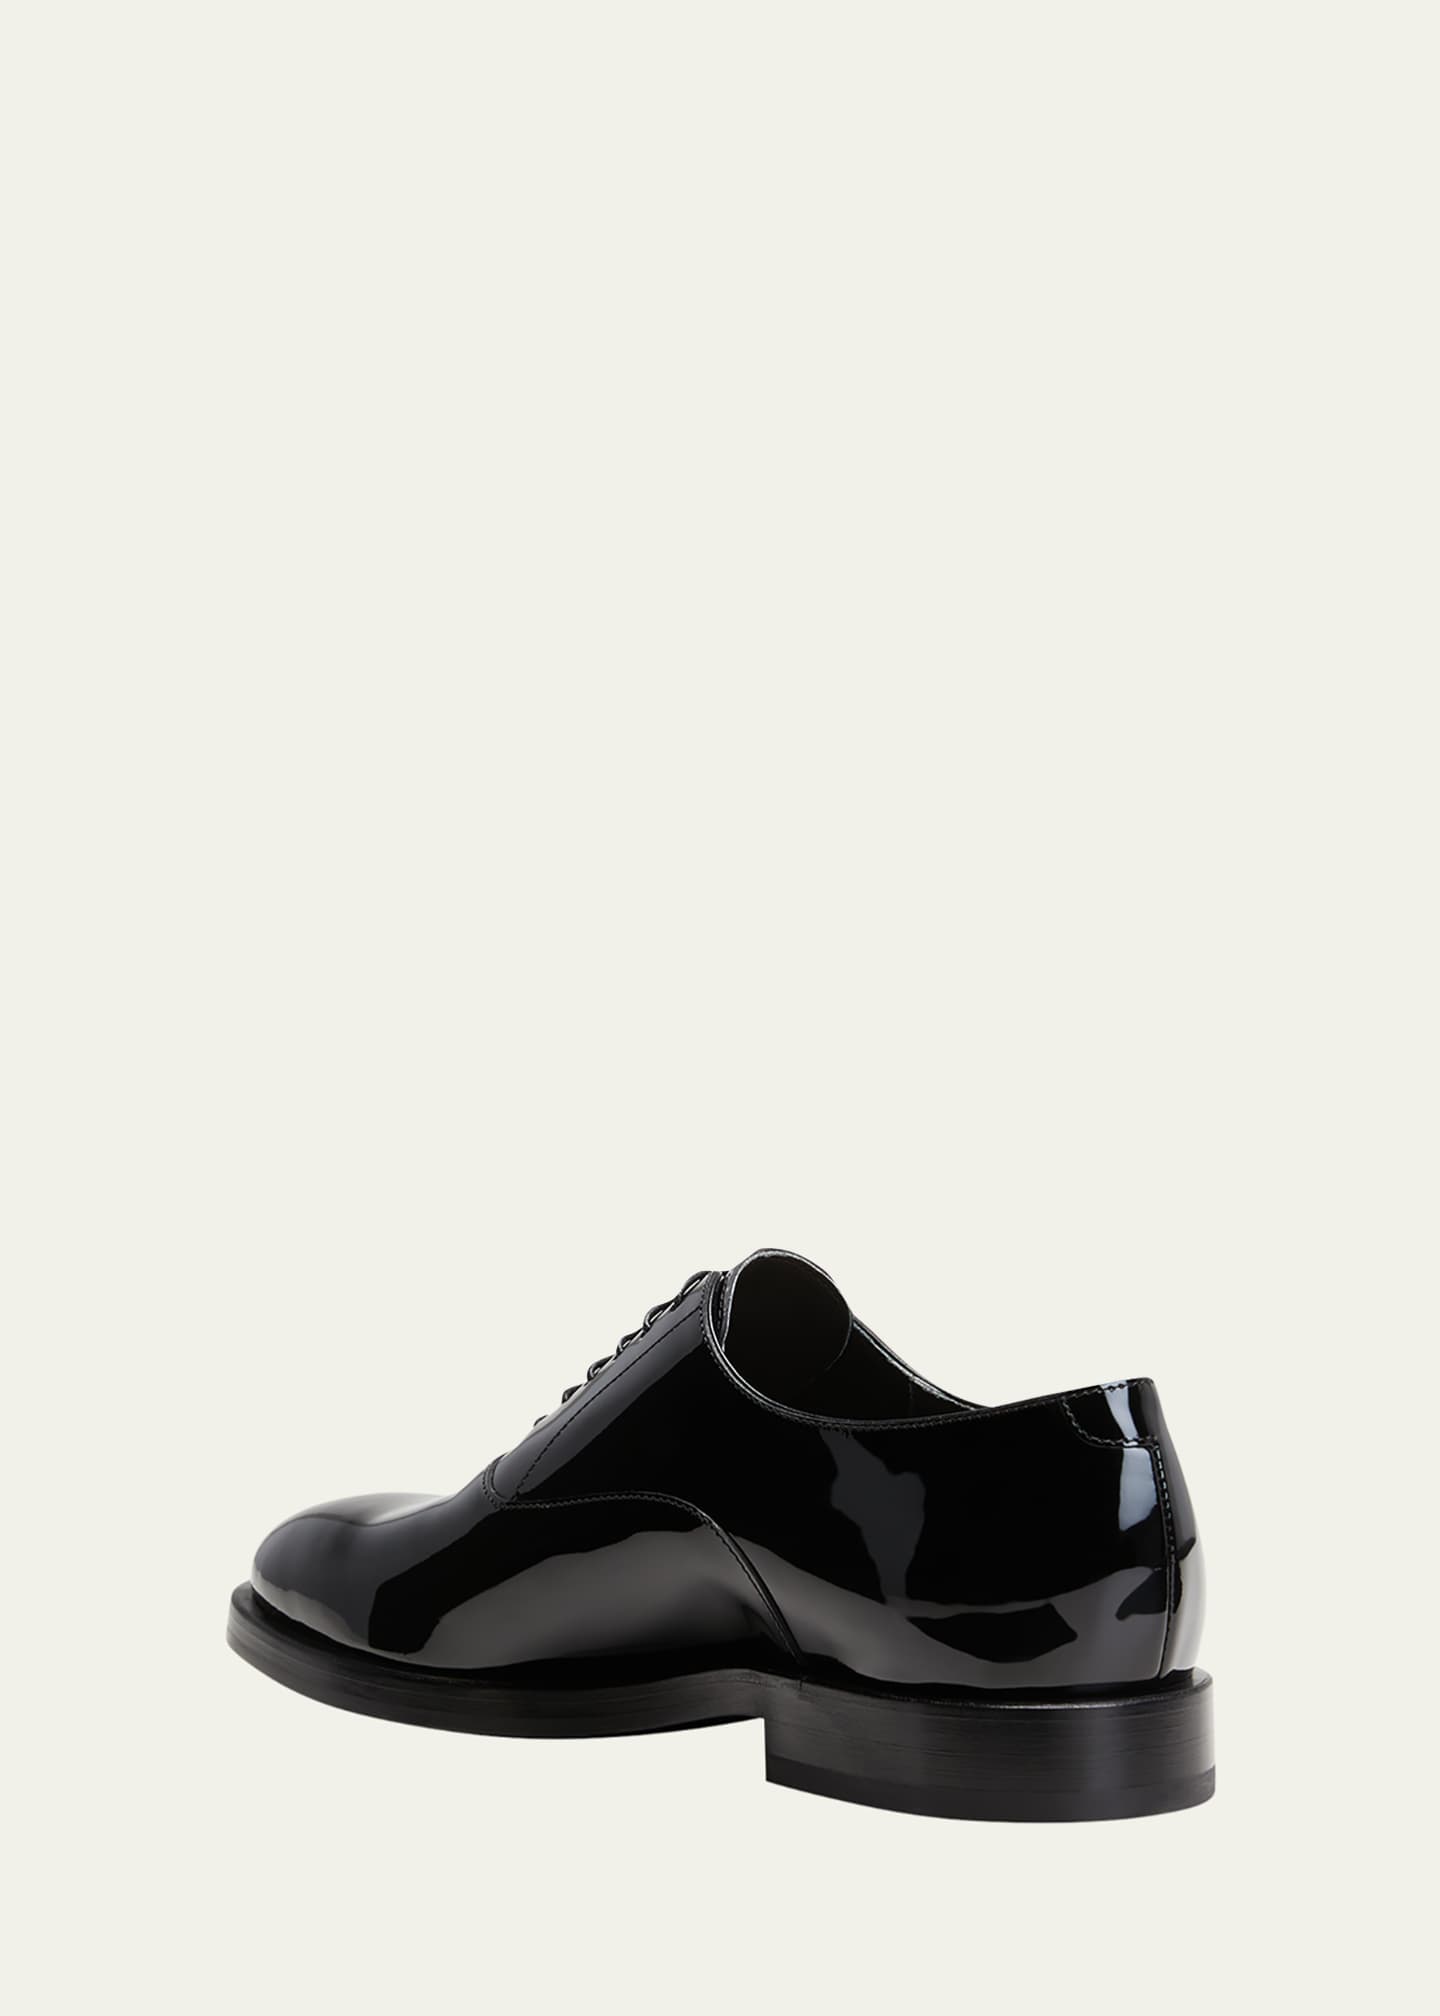 Brunello Cucinelli Men's Patent Leather Tuxedo Oxford Shoes - Bergdorf ...